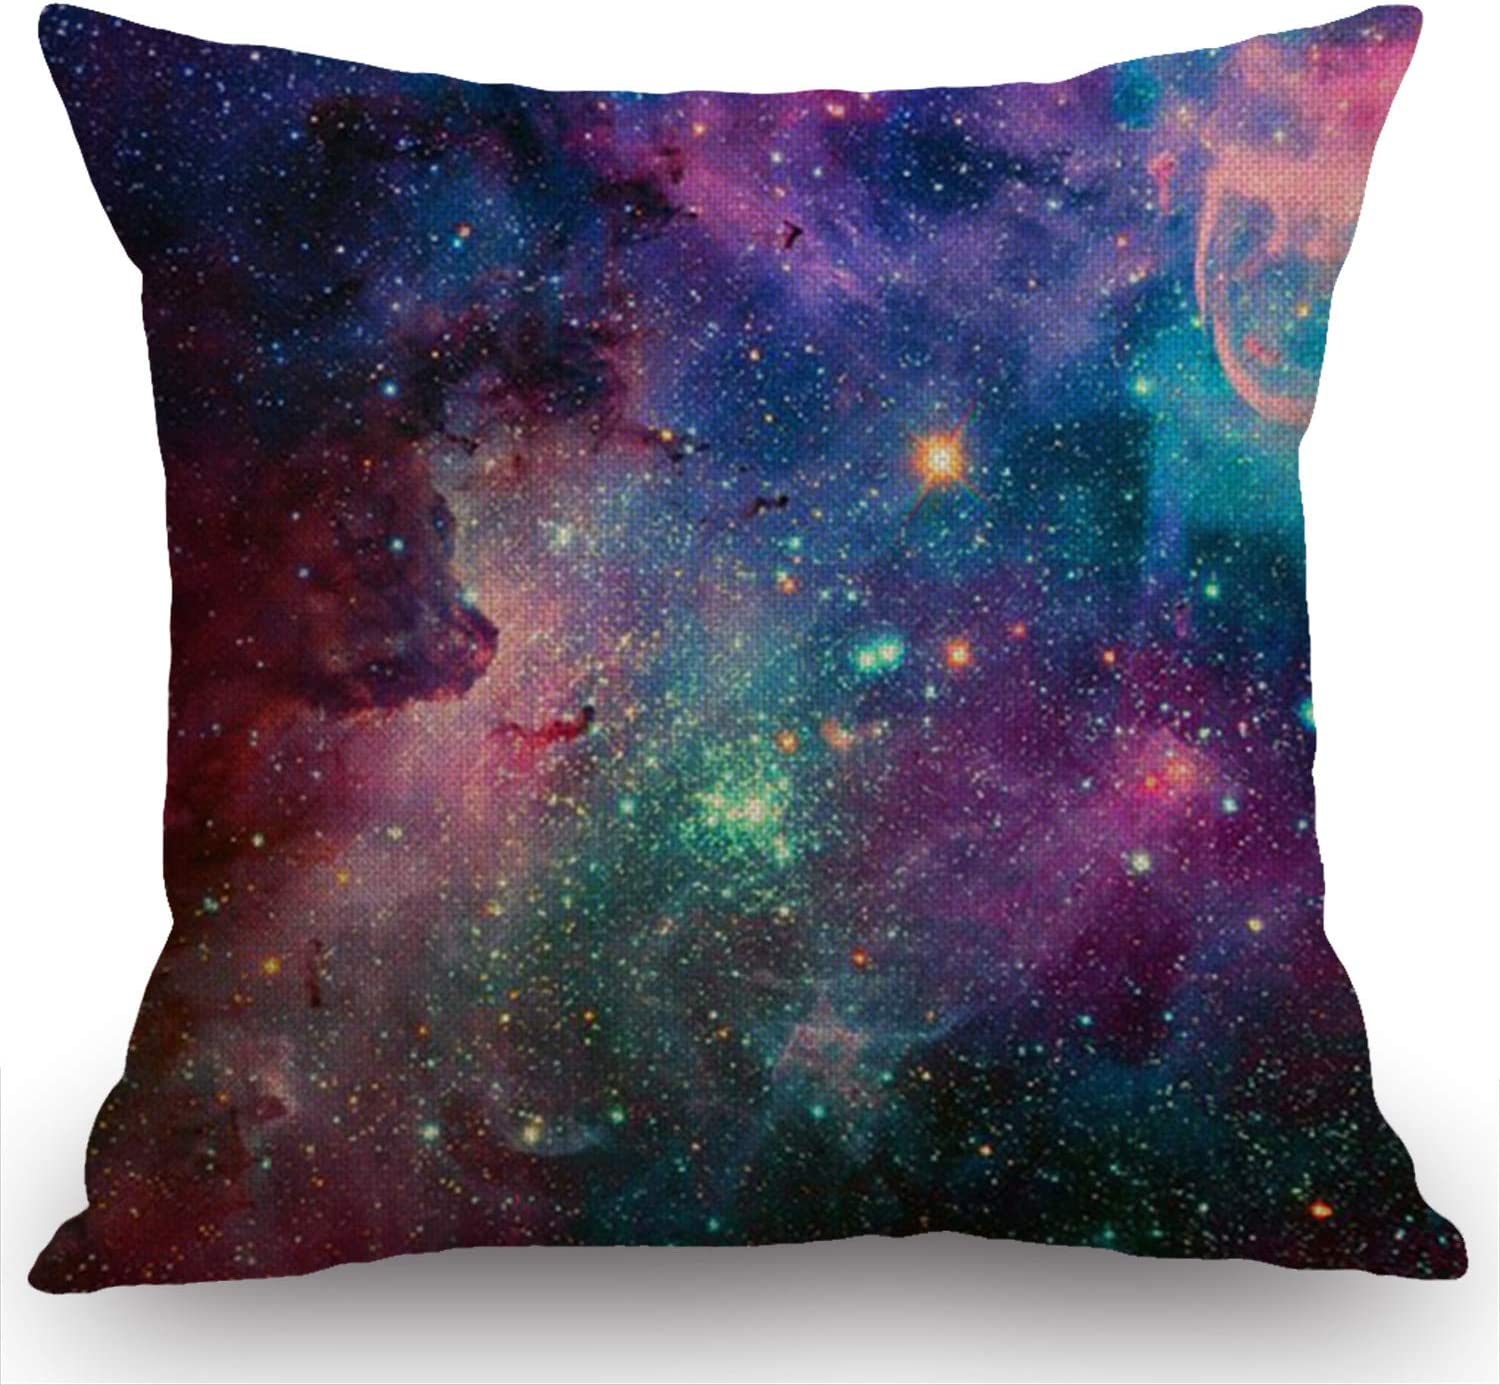 Swono Galaxy Throw Pillow Cover